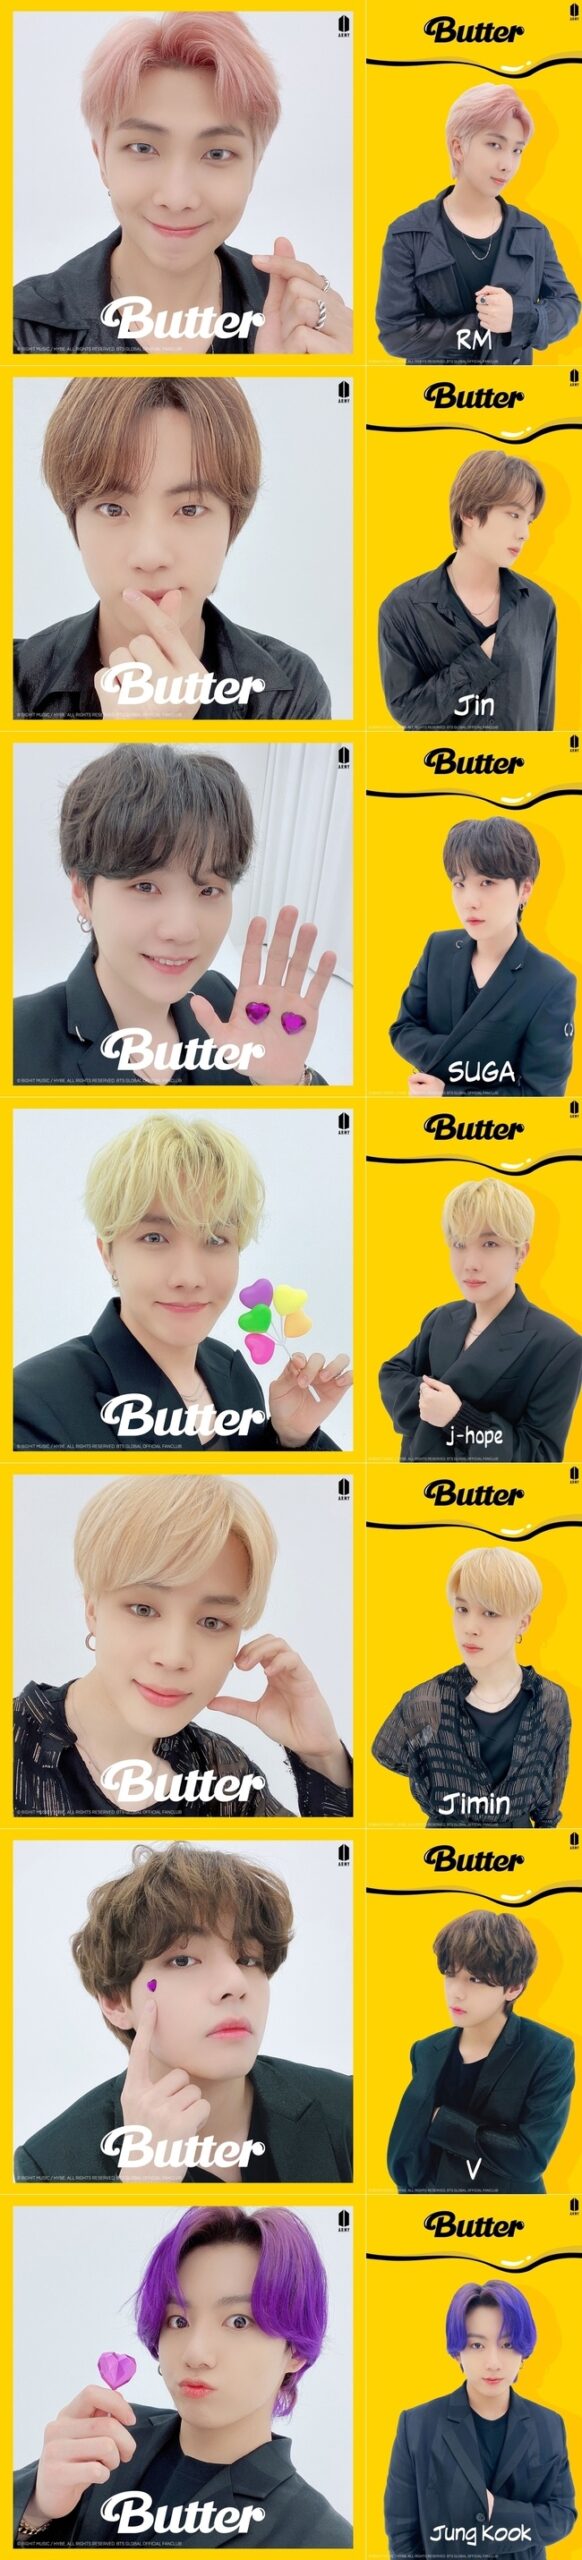 カムバ Bts 5 19 新英語曲 Butter ティーザー写真公開 Love Korea